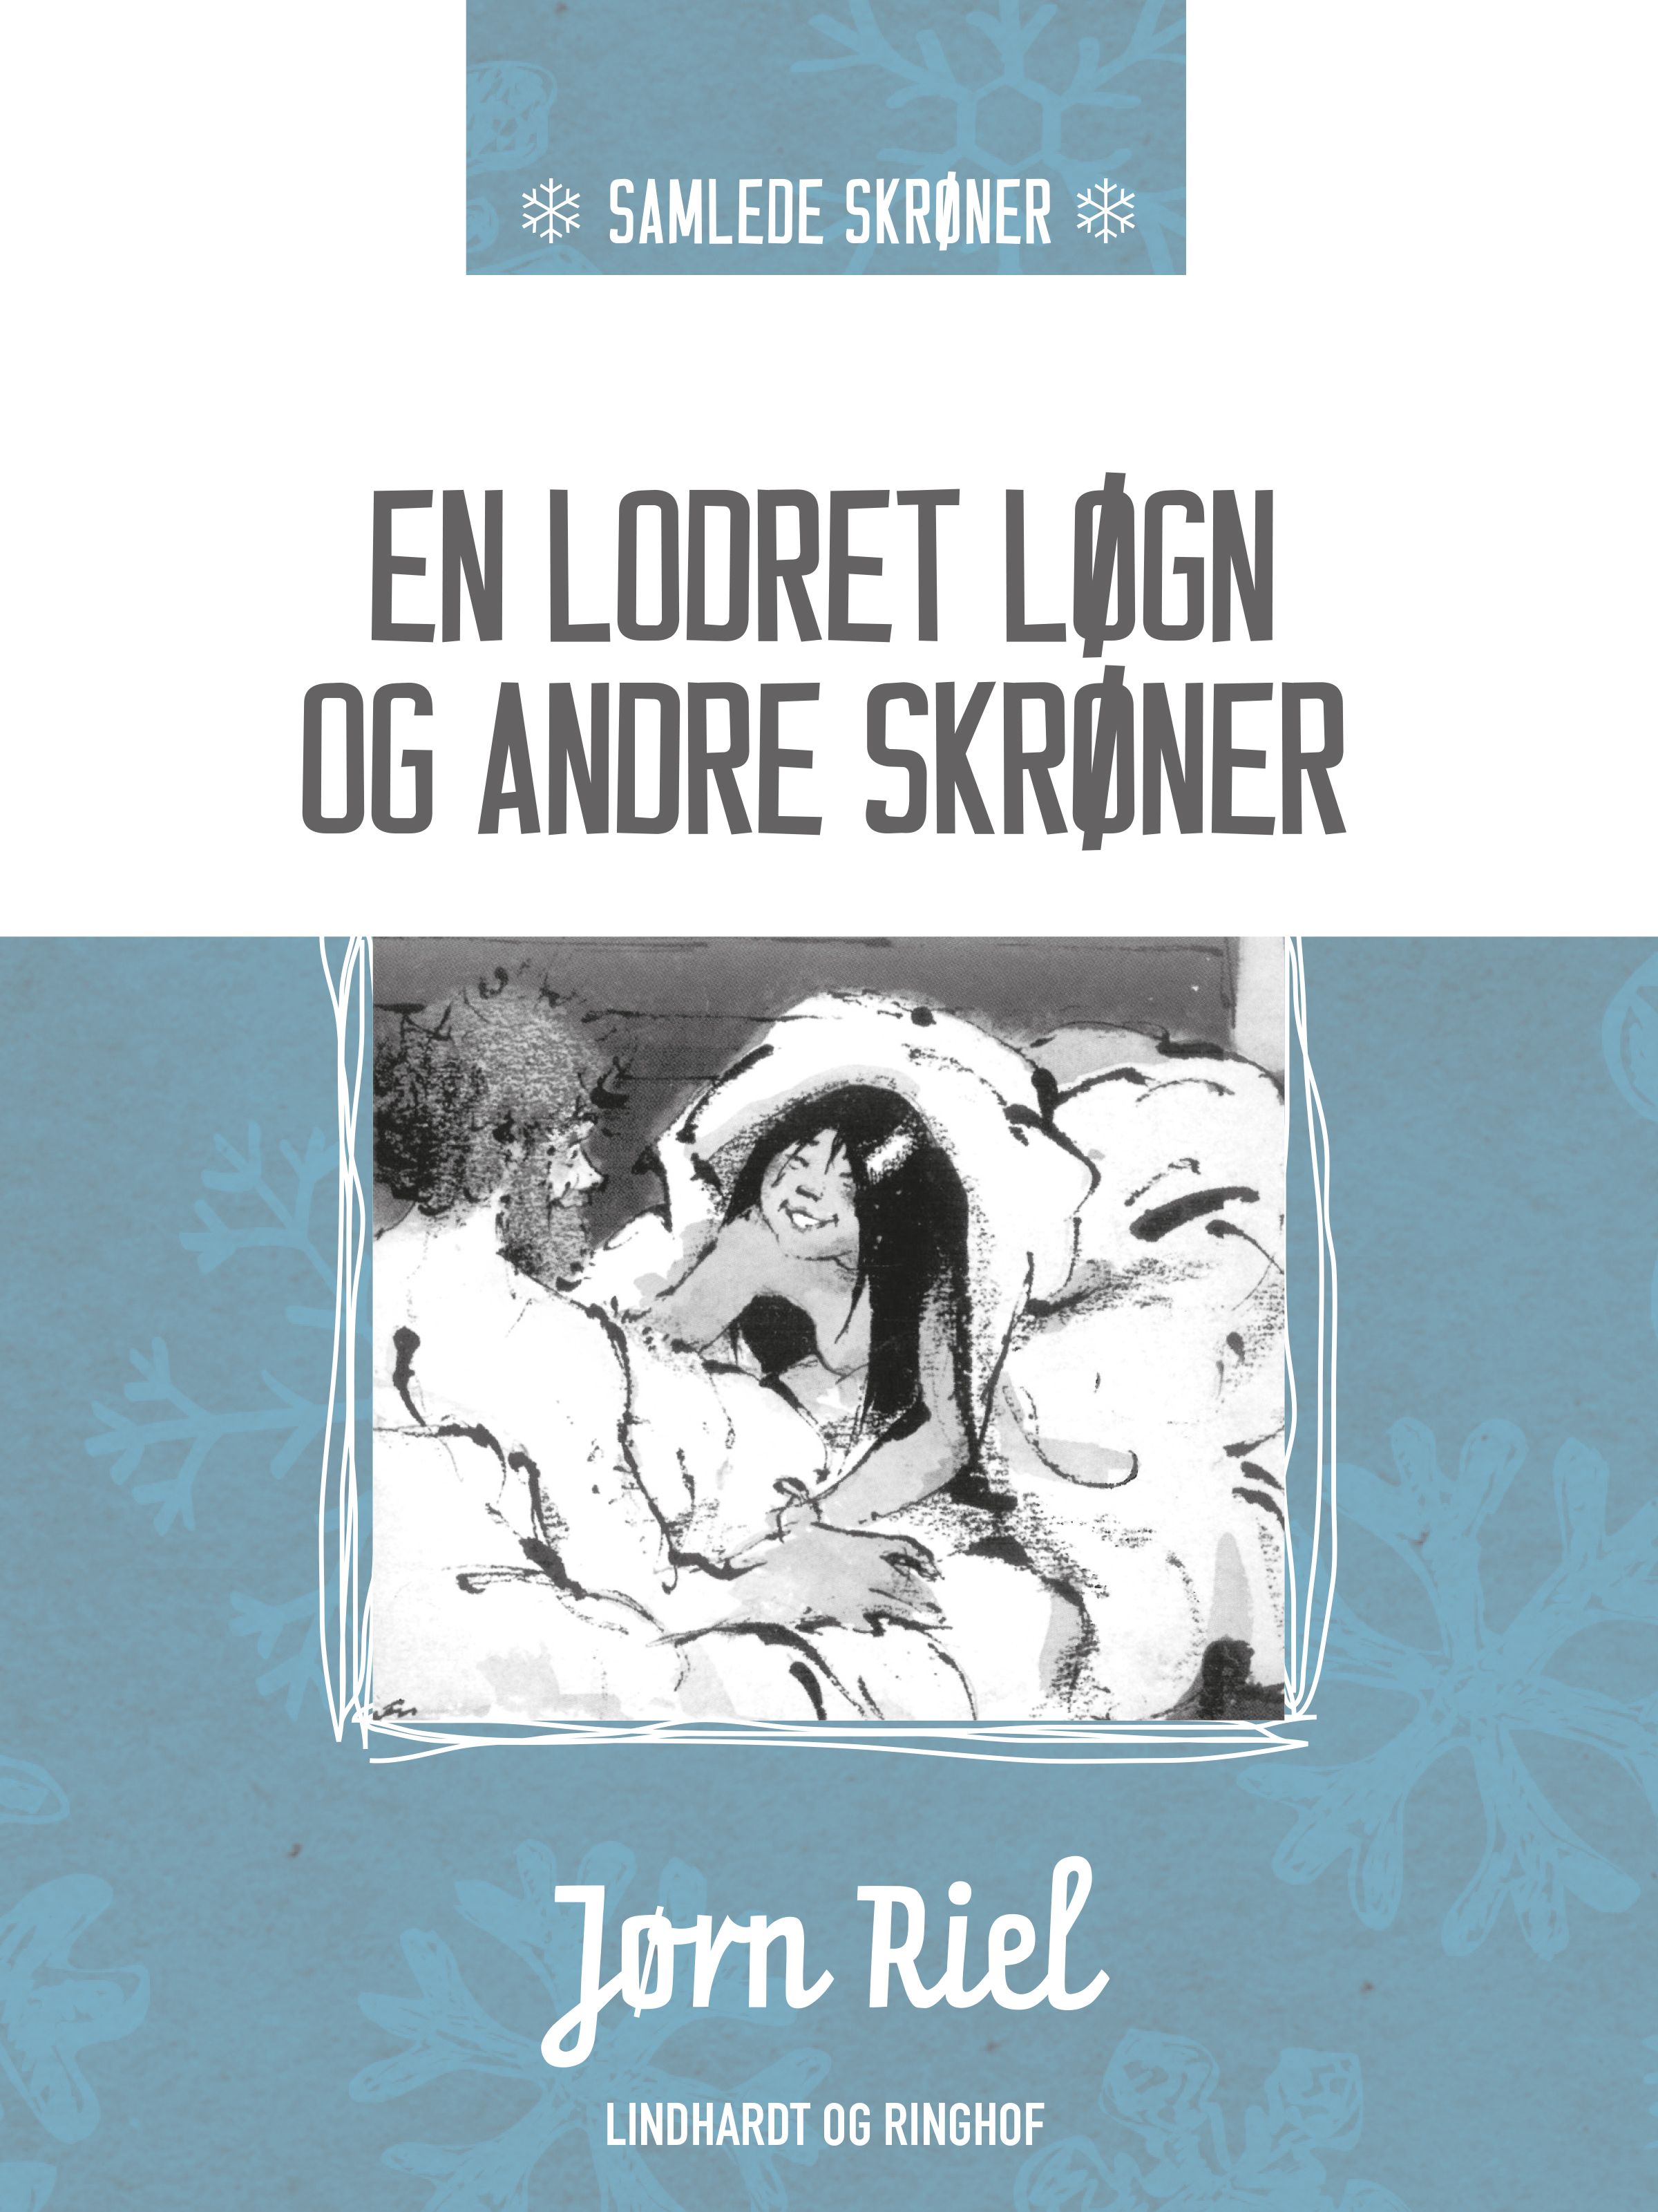 En lodret løgn og andre skrøner, eBook by Jørn Riel